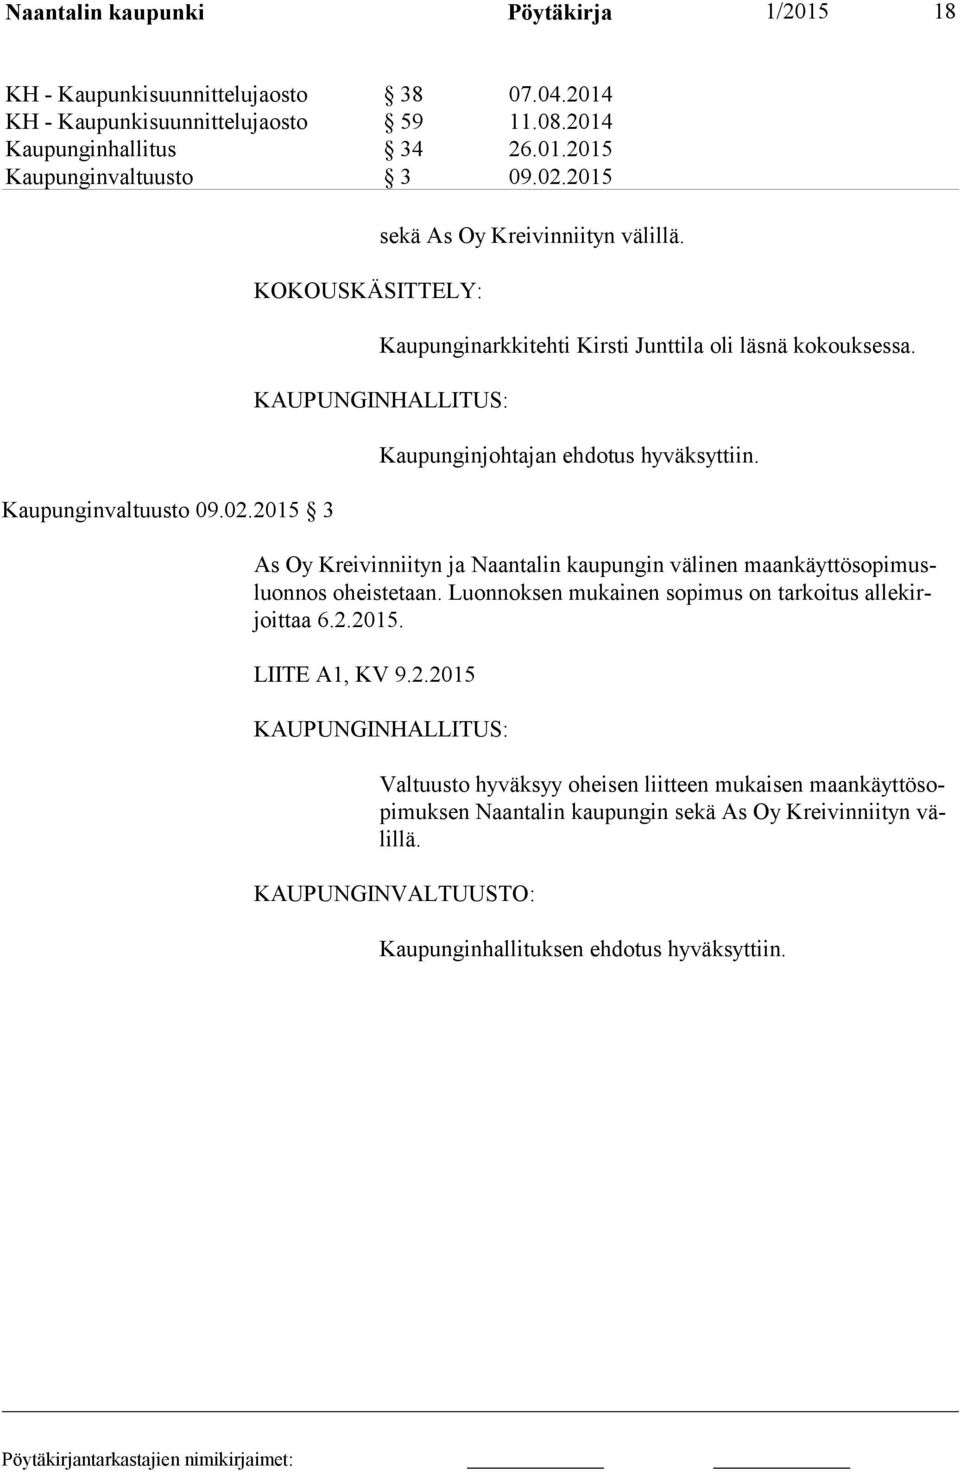 KAUPUNGINHALLITUS: Kaupunginjohtajan ehdotus hyväksyttiin. As Oy Kreivinniityn ja Naantalin kaupungin välinen maankäyttösopimusluonnos oheistetaan.